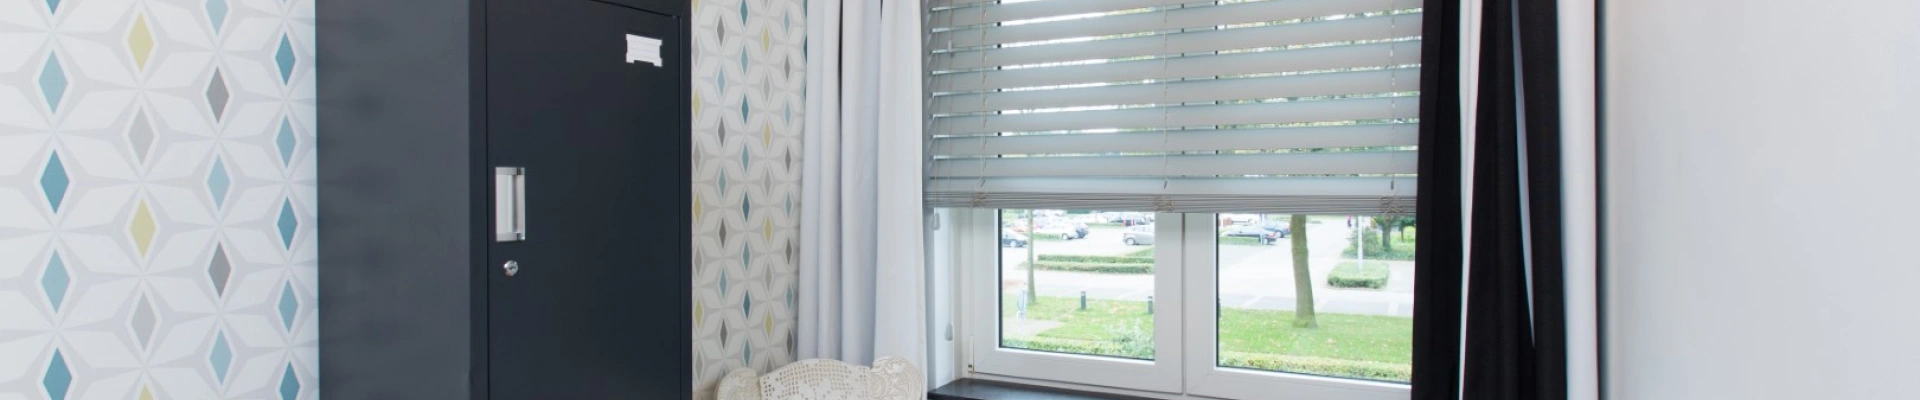 Houten blinds als raamdecoratie in de slaapkamer